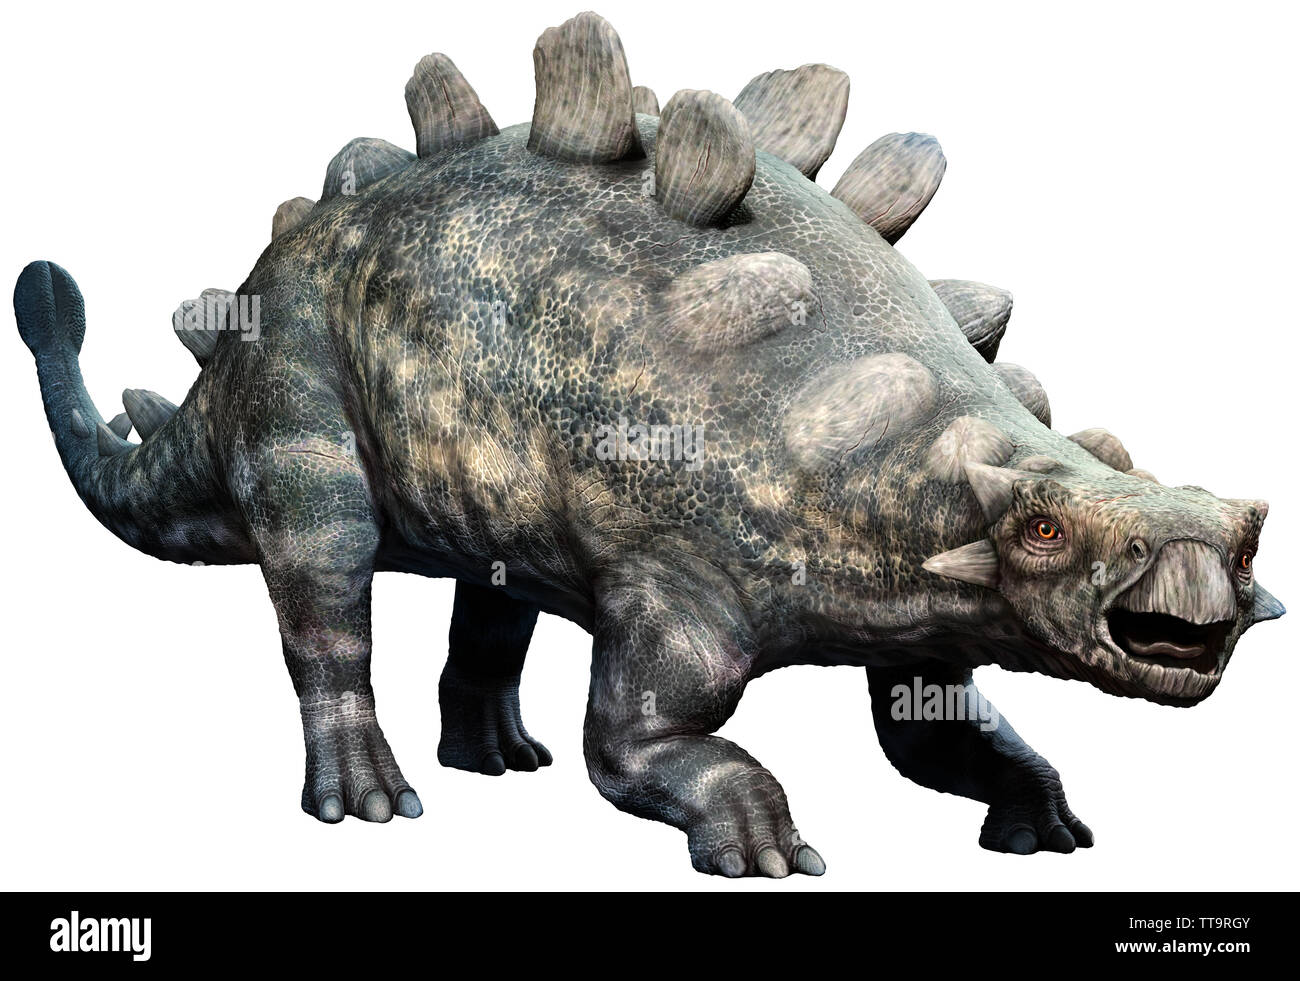 Crichtonsaurus from the Cretaceous era 3D illustration Stock Photo